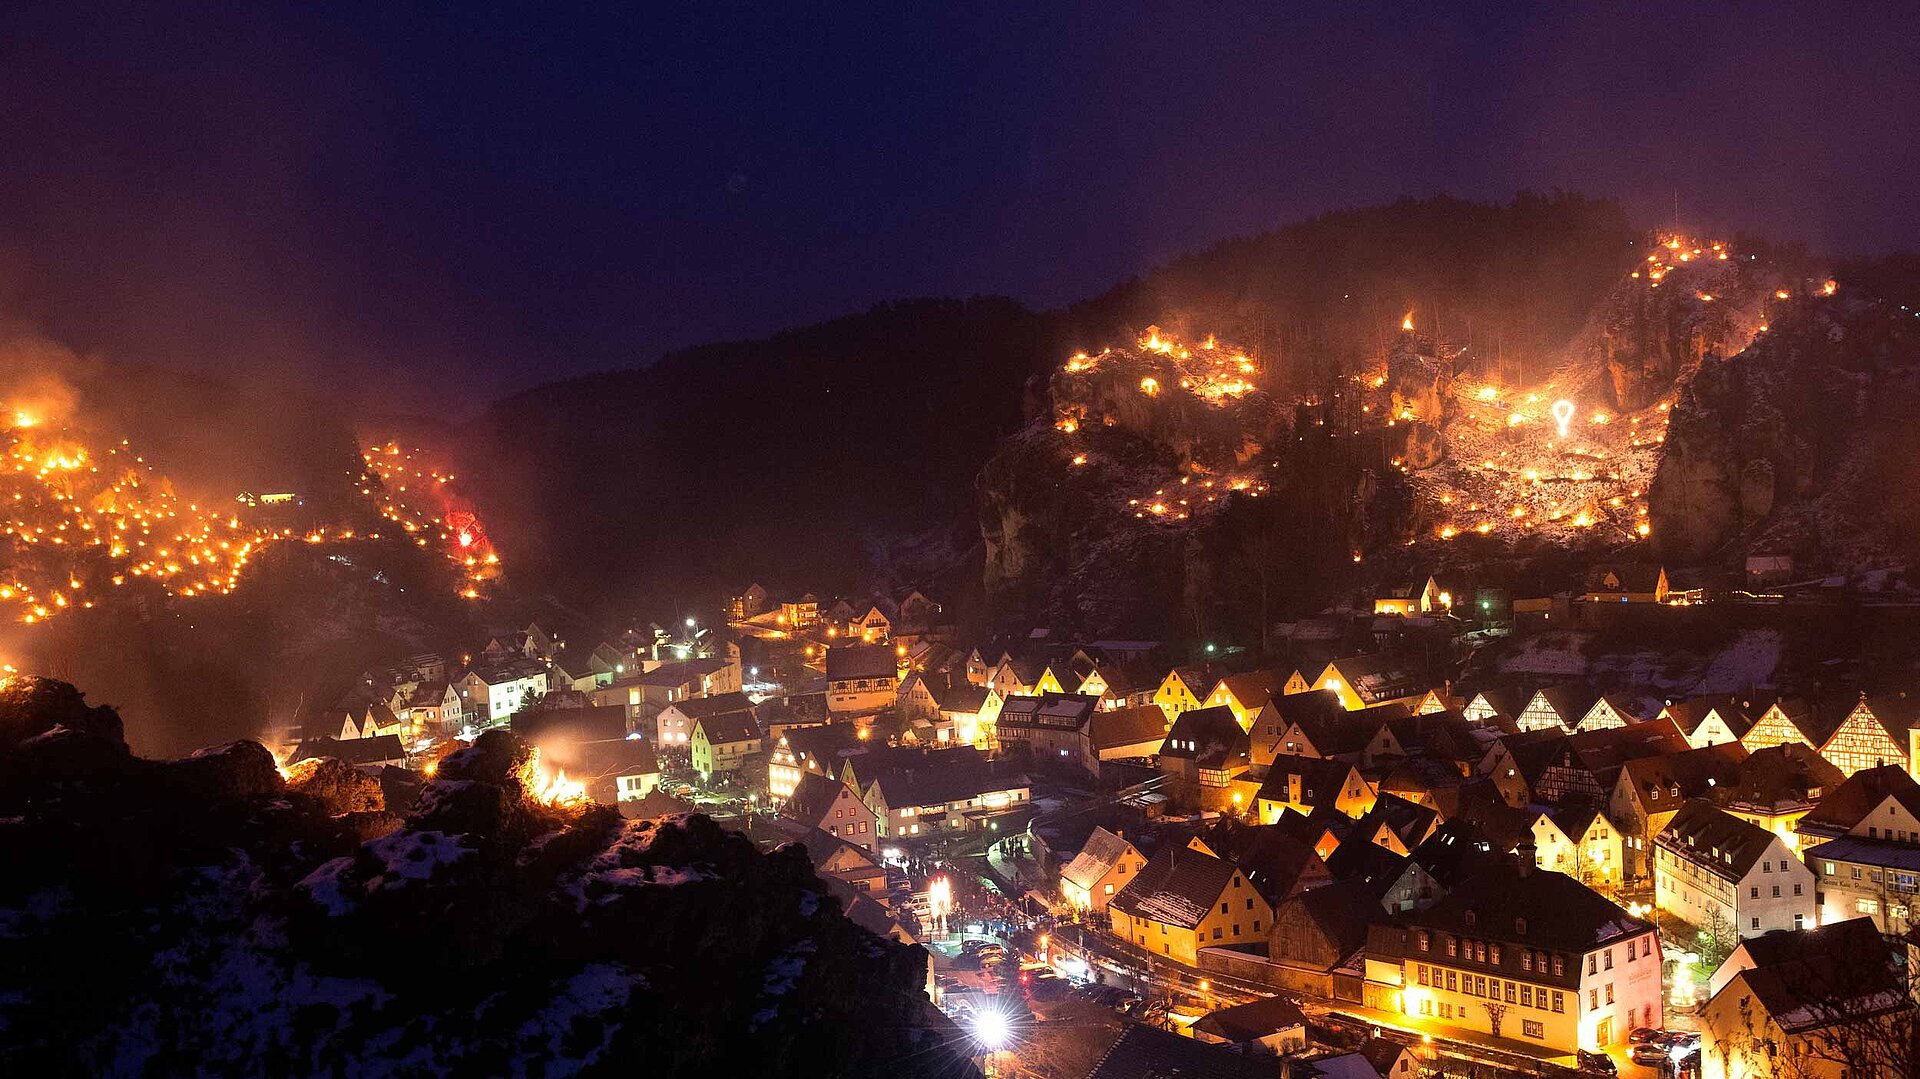 Lichterfeste in der Fränkischen Schweiz - Pottenstein